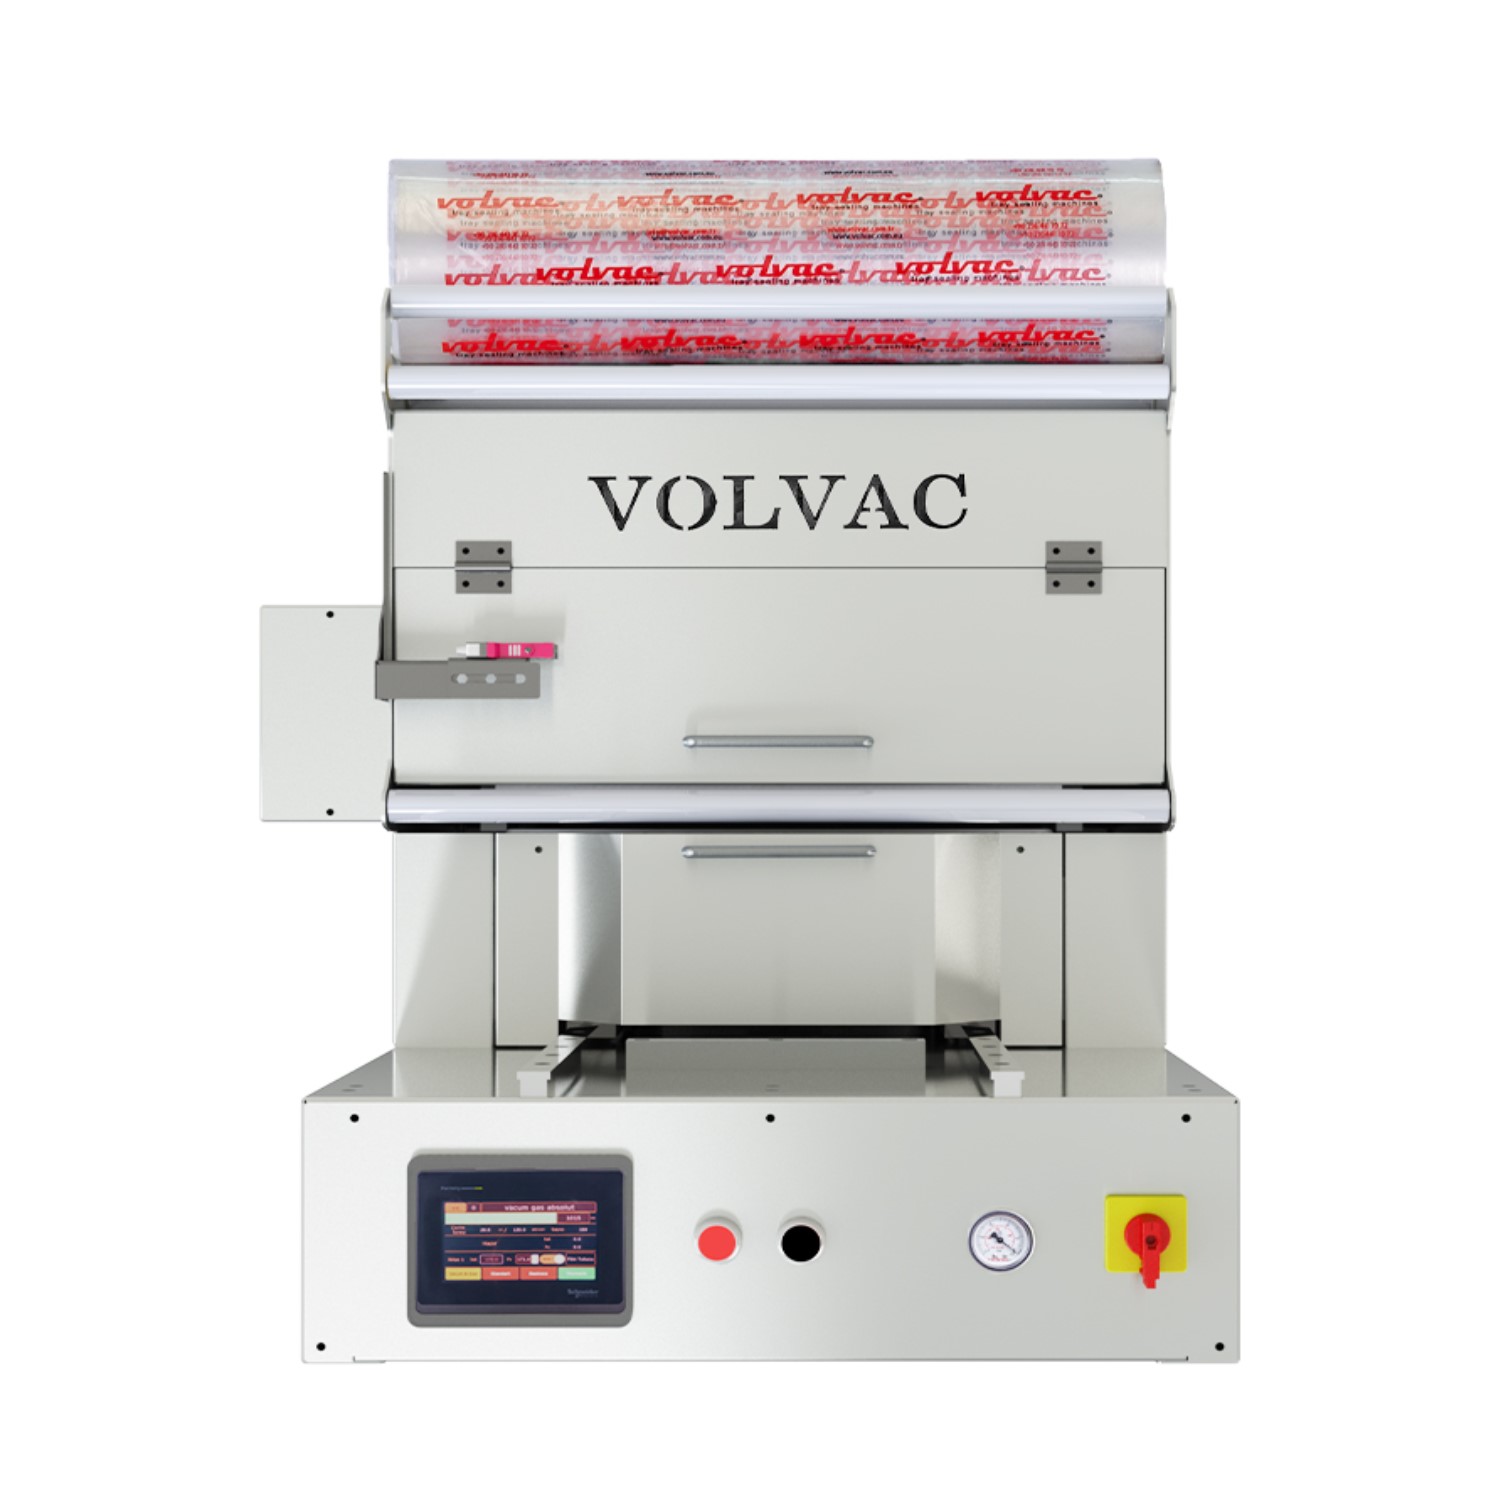 Volvac E26 Çekmeceli Tabak Kapatma Makinası -3.jpg (156 KB)